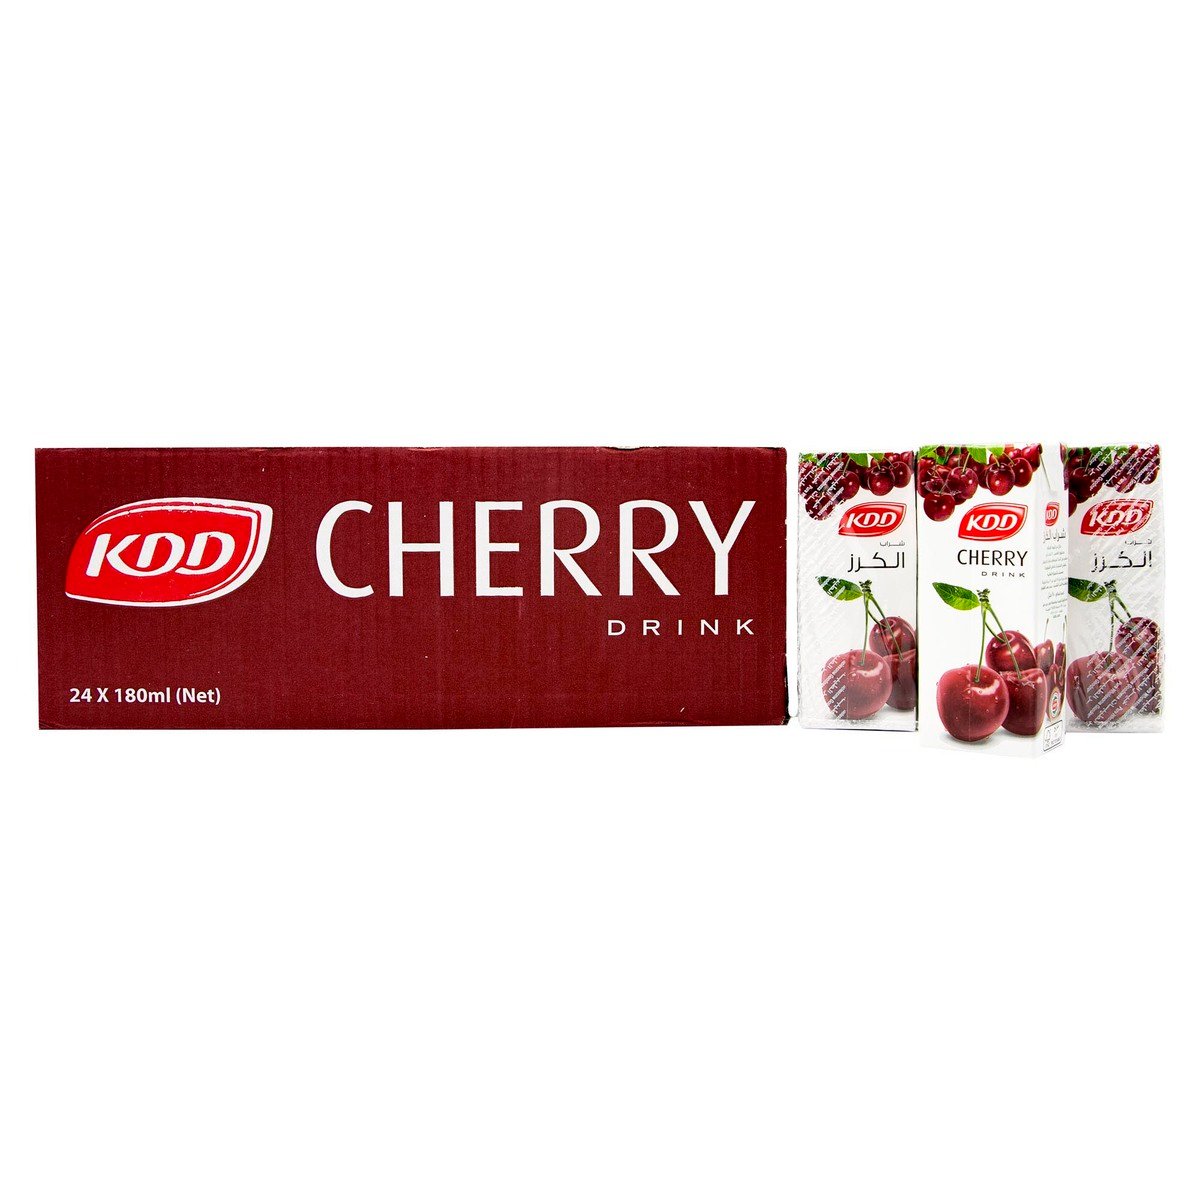 KDD Cherry Drink 24 x 180ml